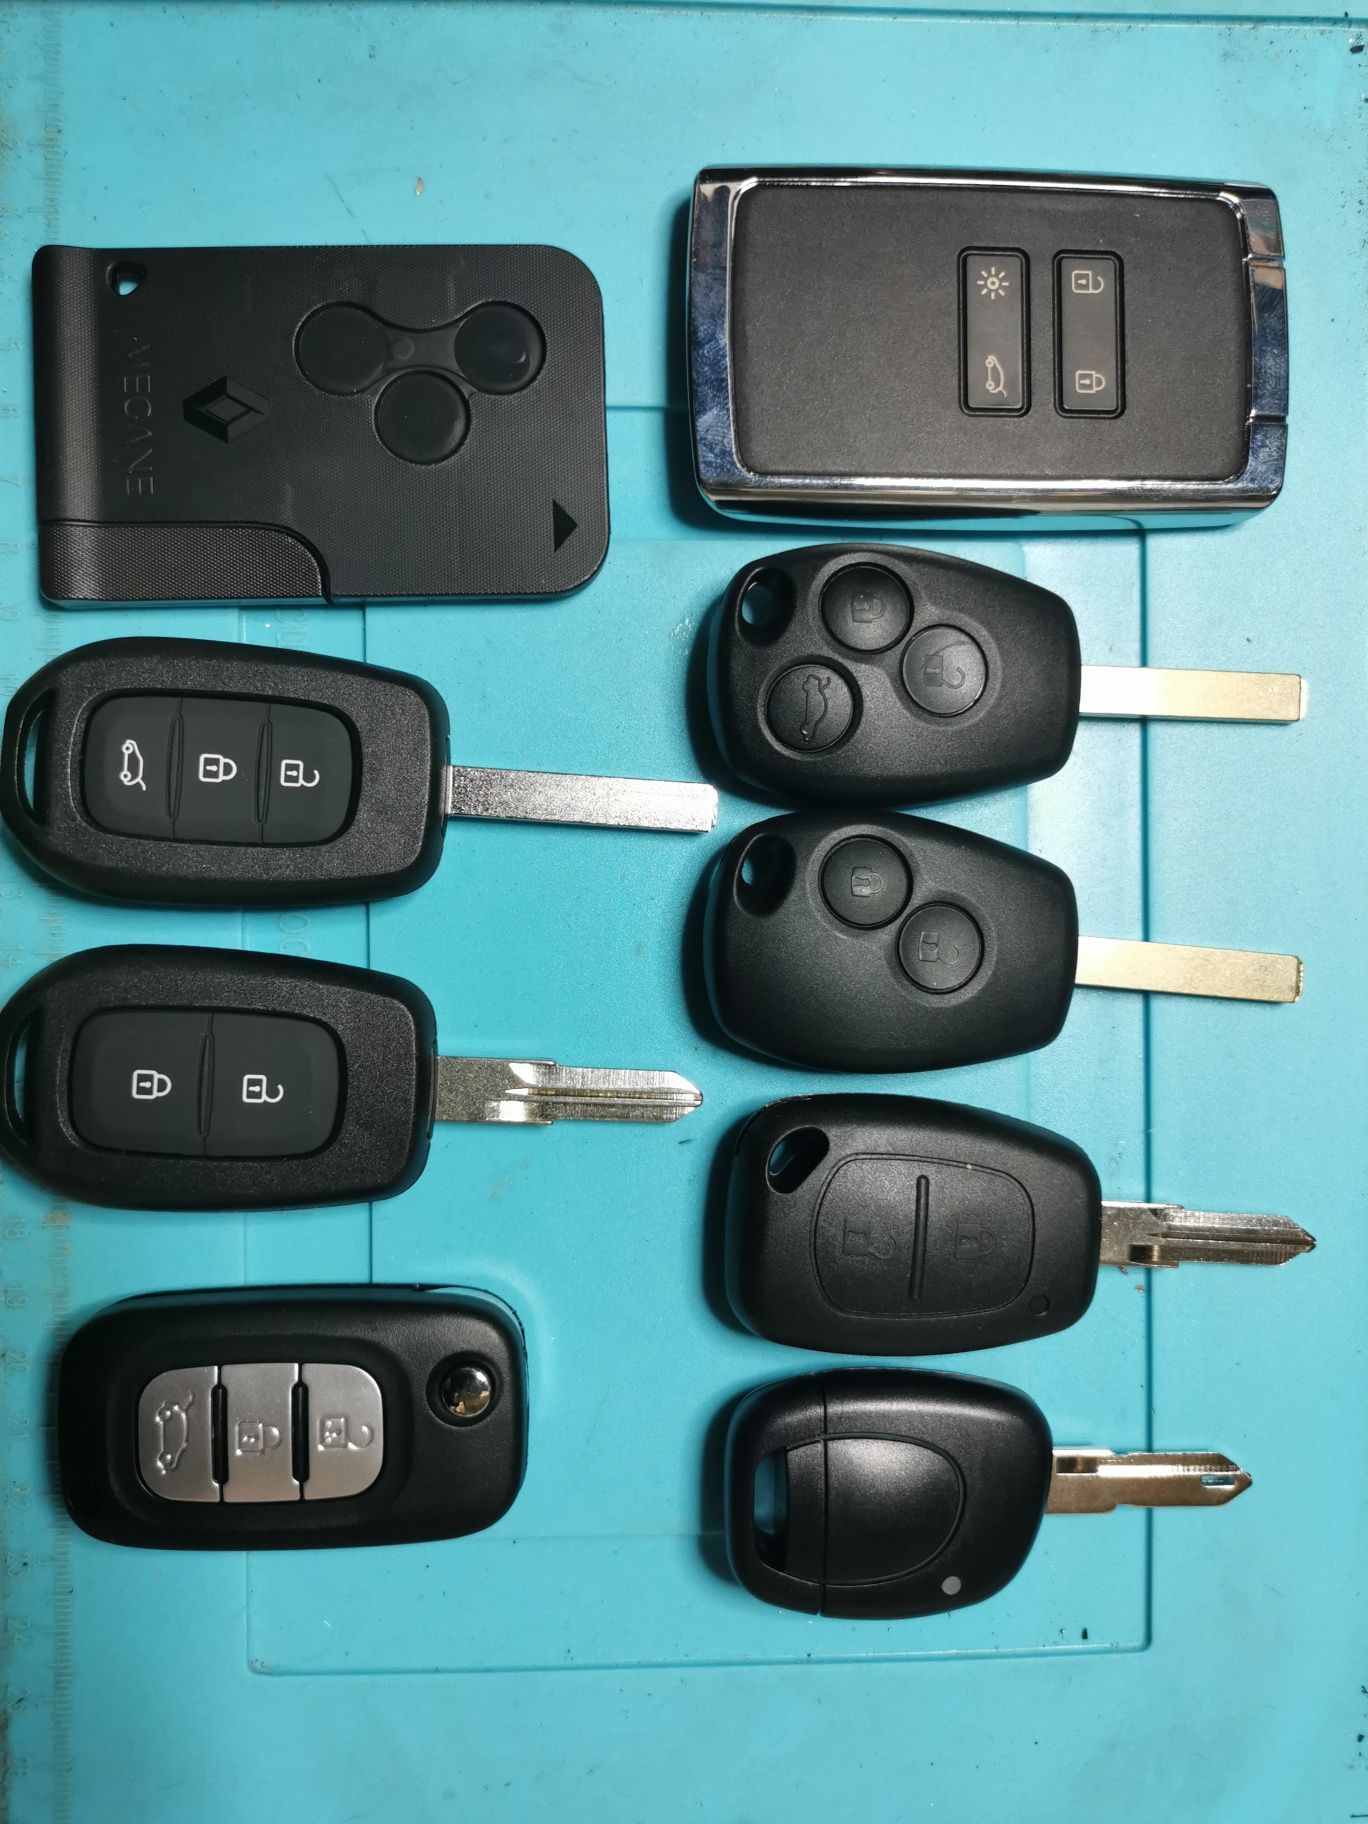 Renault Master Vivaro kluczyk kodowanie programowanie dorobienie klucz